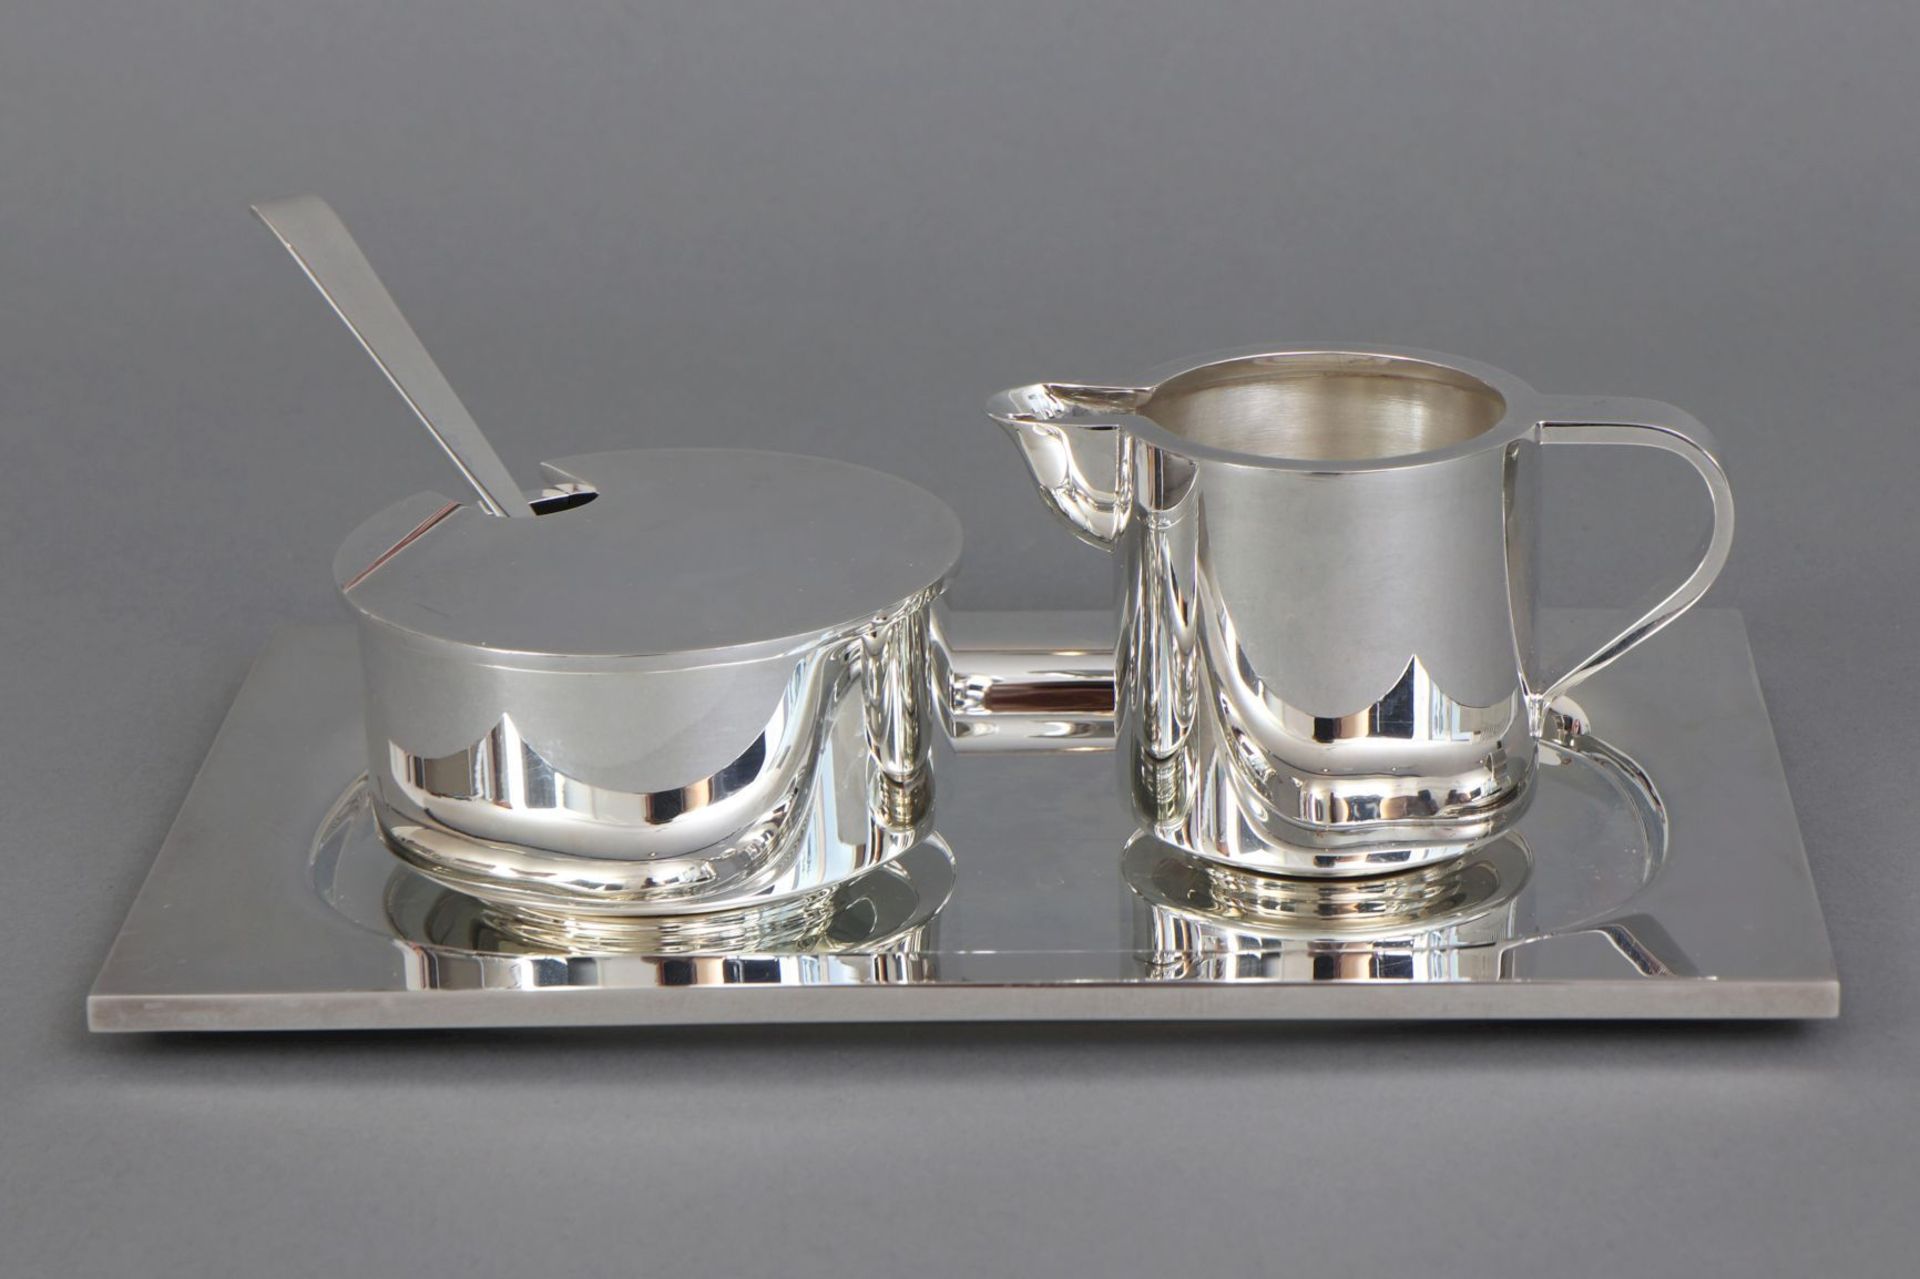 ROBBE&BERKING Silber Milch- und Zucker-Set - Image 2 of 3